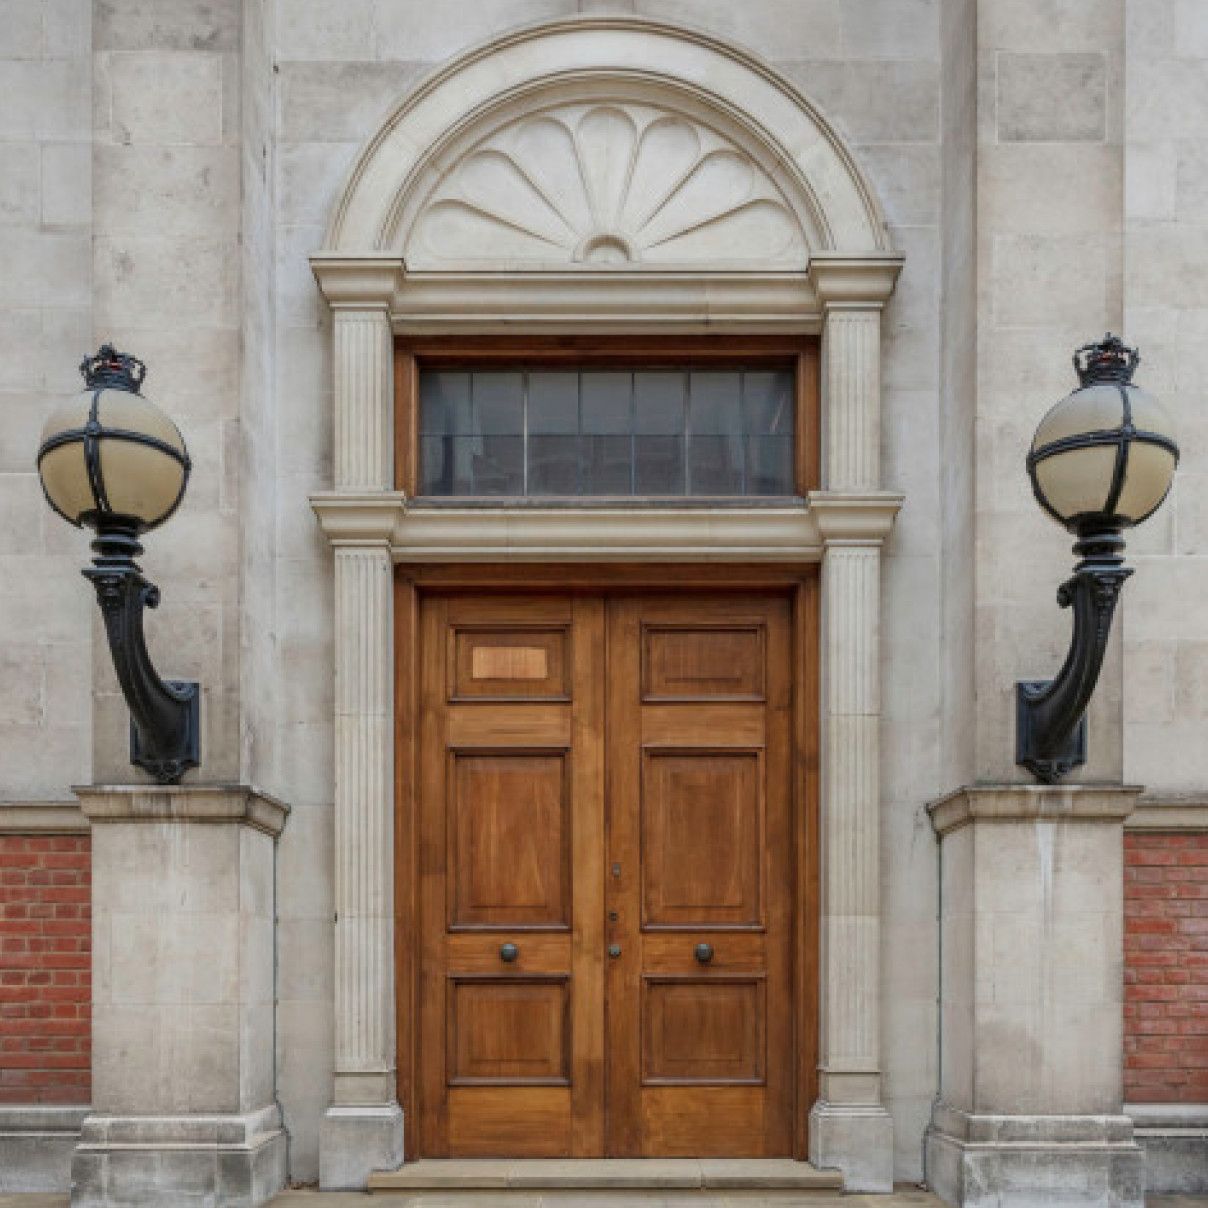 Wooden doors of the Queen's Tower